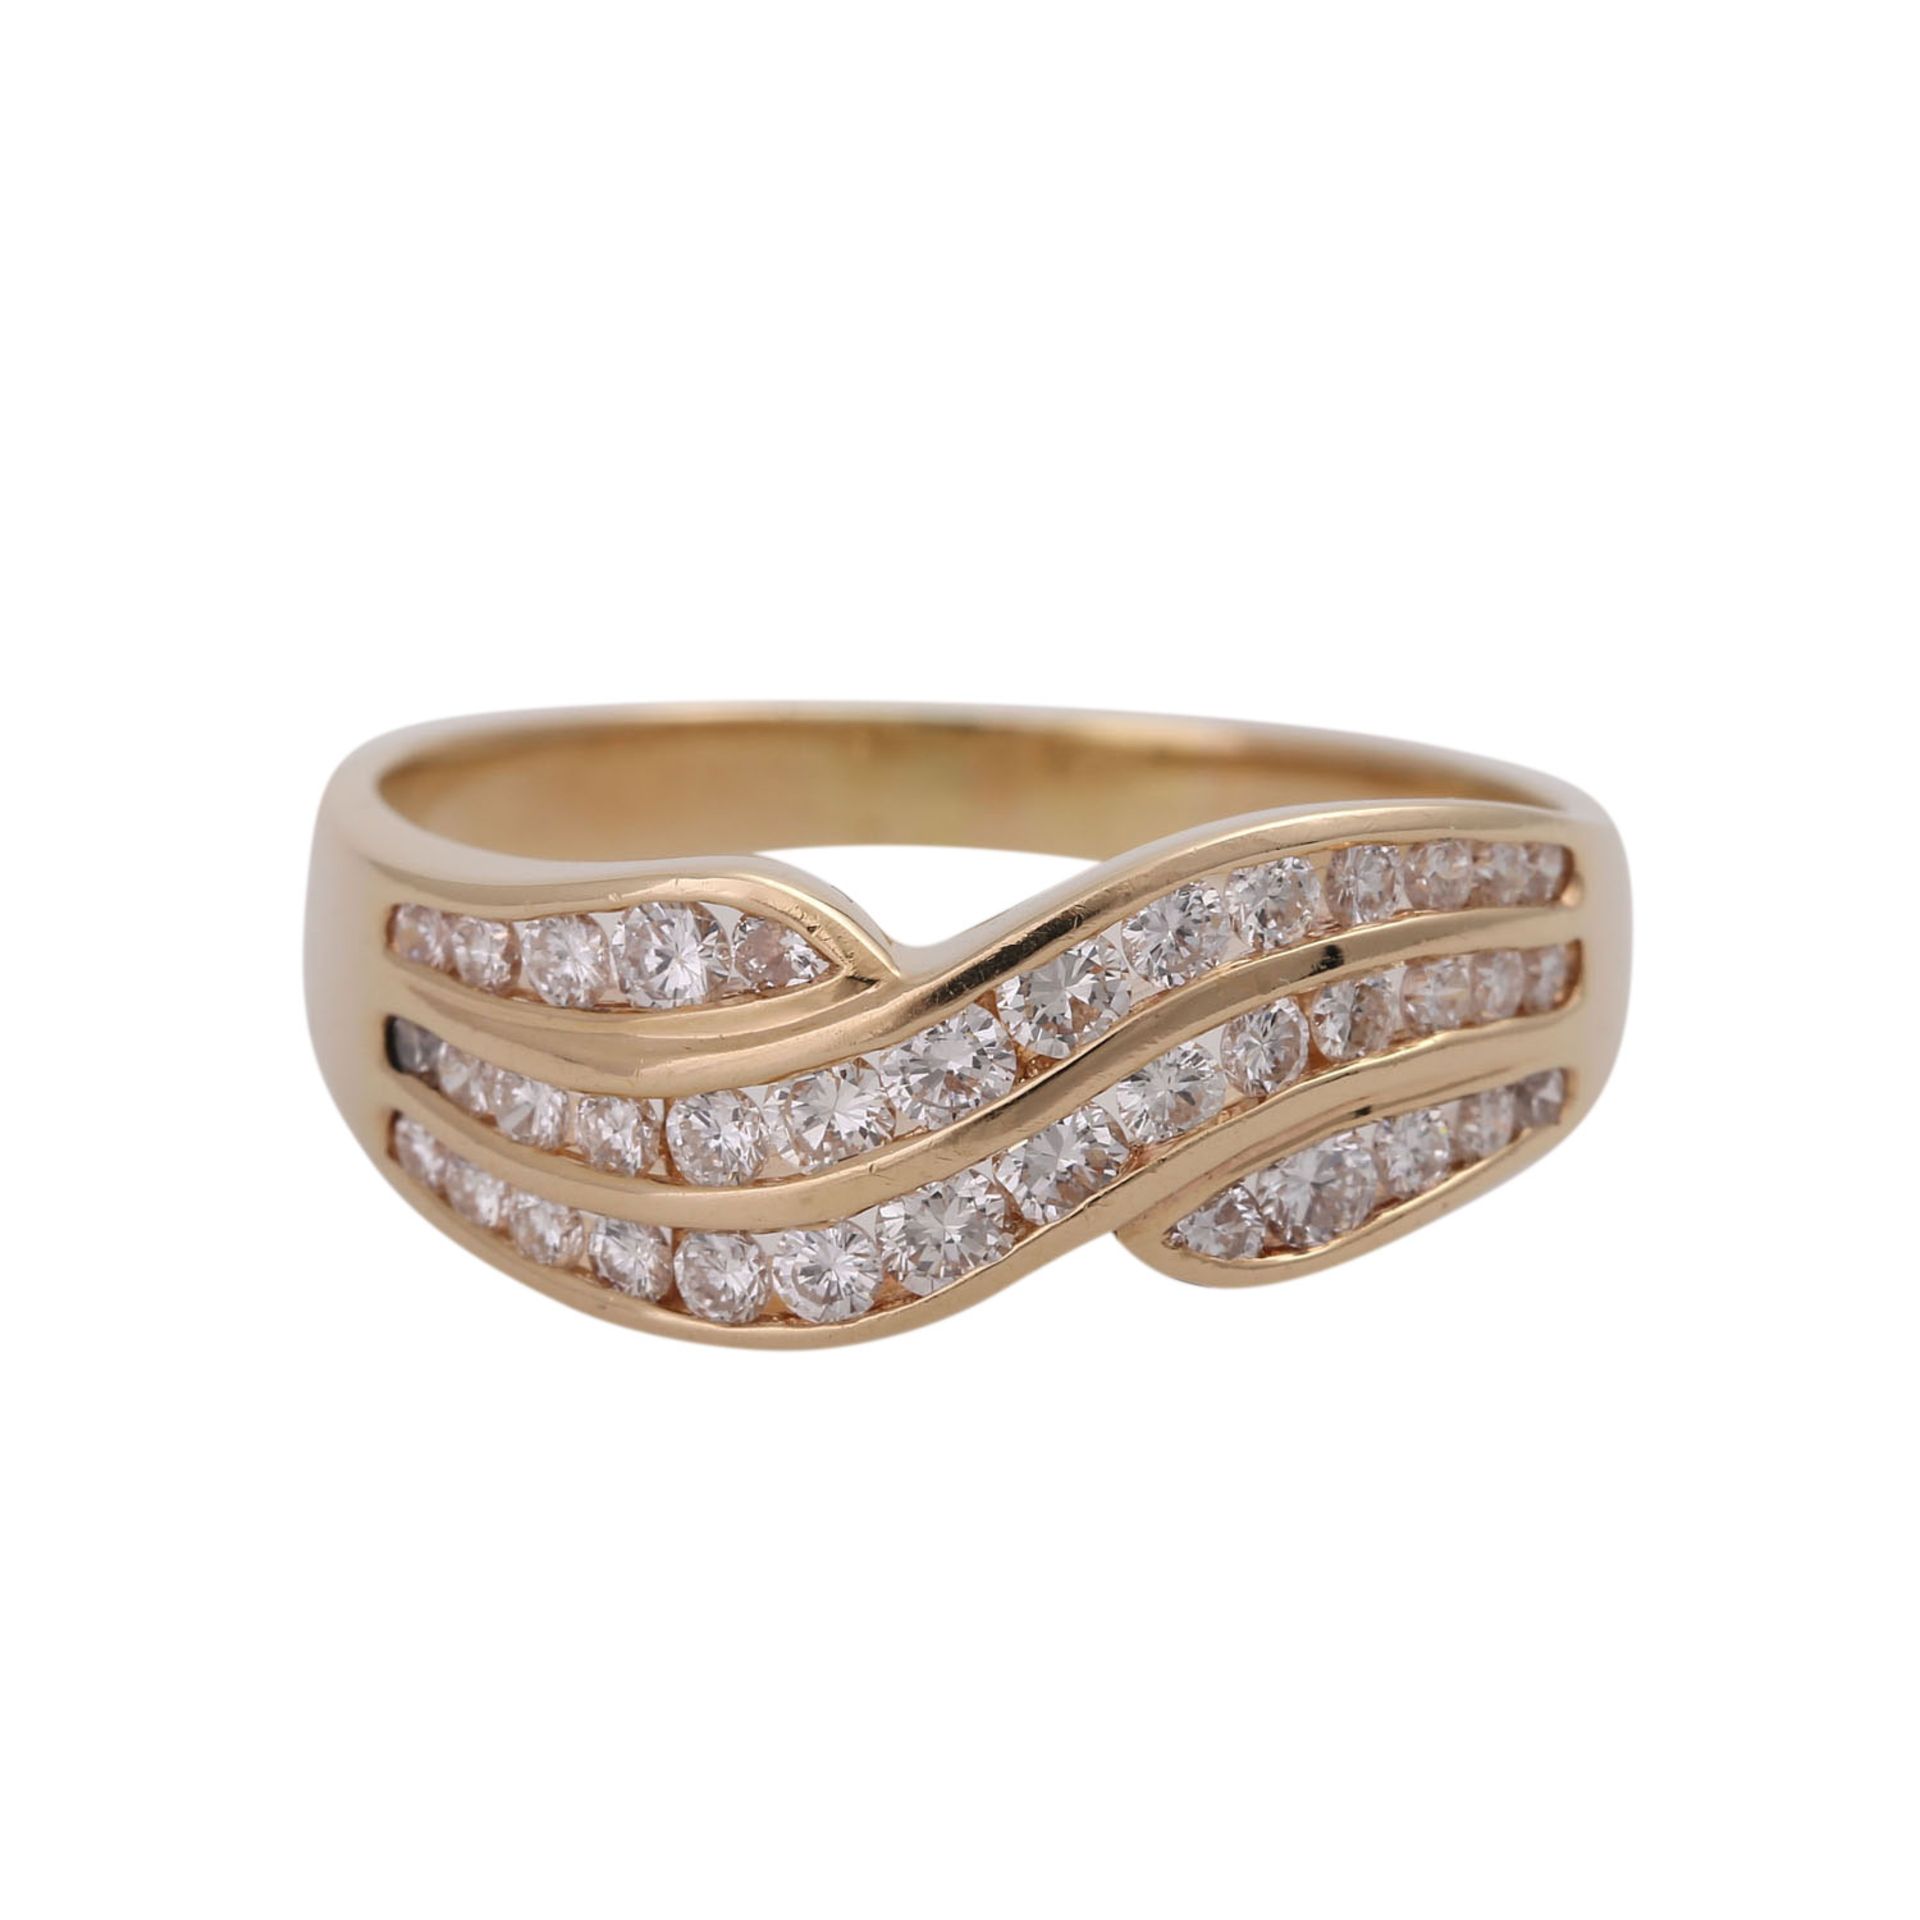 Ring mit Brillanten, zus. ca. 0,8 ct,guter Farb- und Reinheitsgrad, GG 14K, RW 58, Anordnung in 3